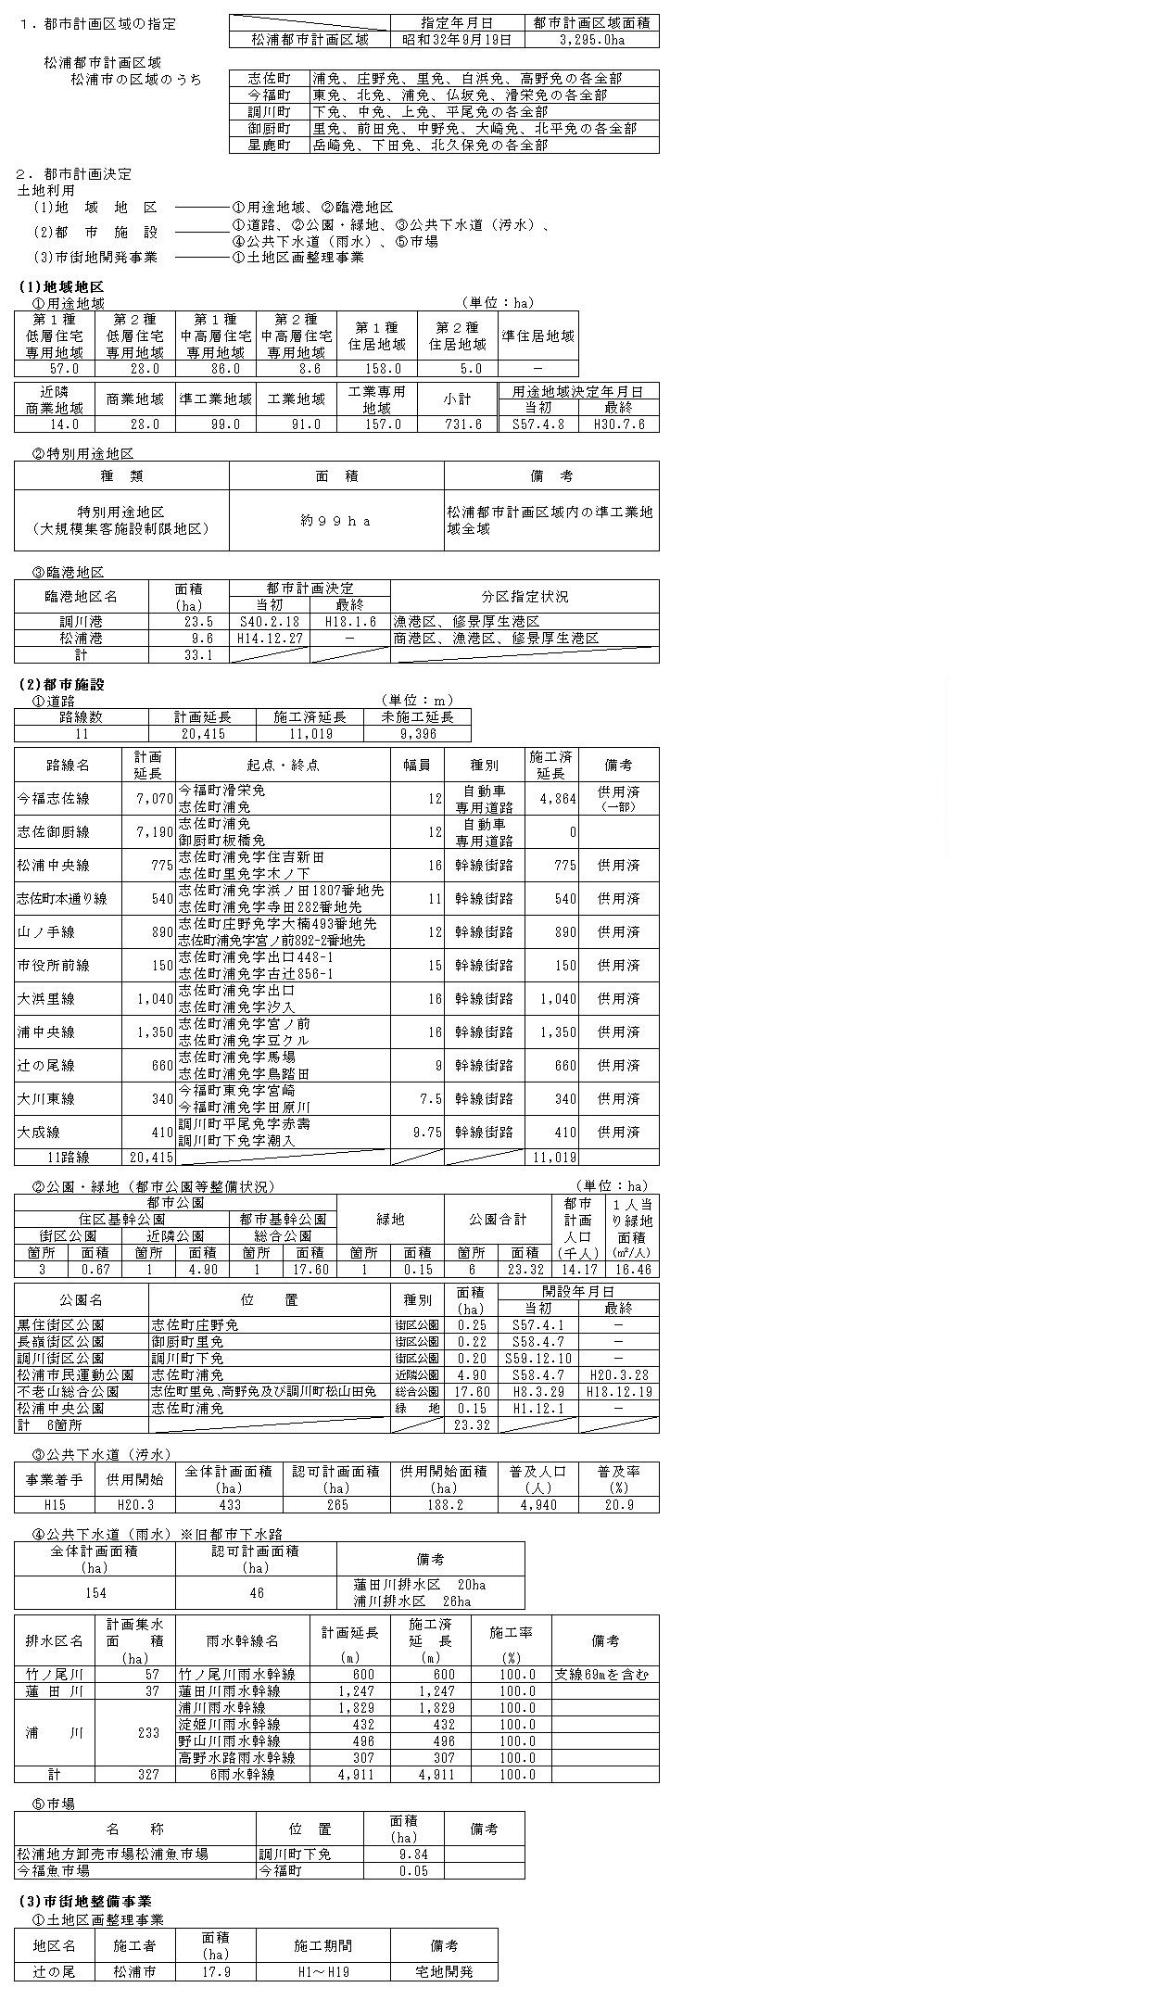 松浦市の都市計画の内容の一覧表